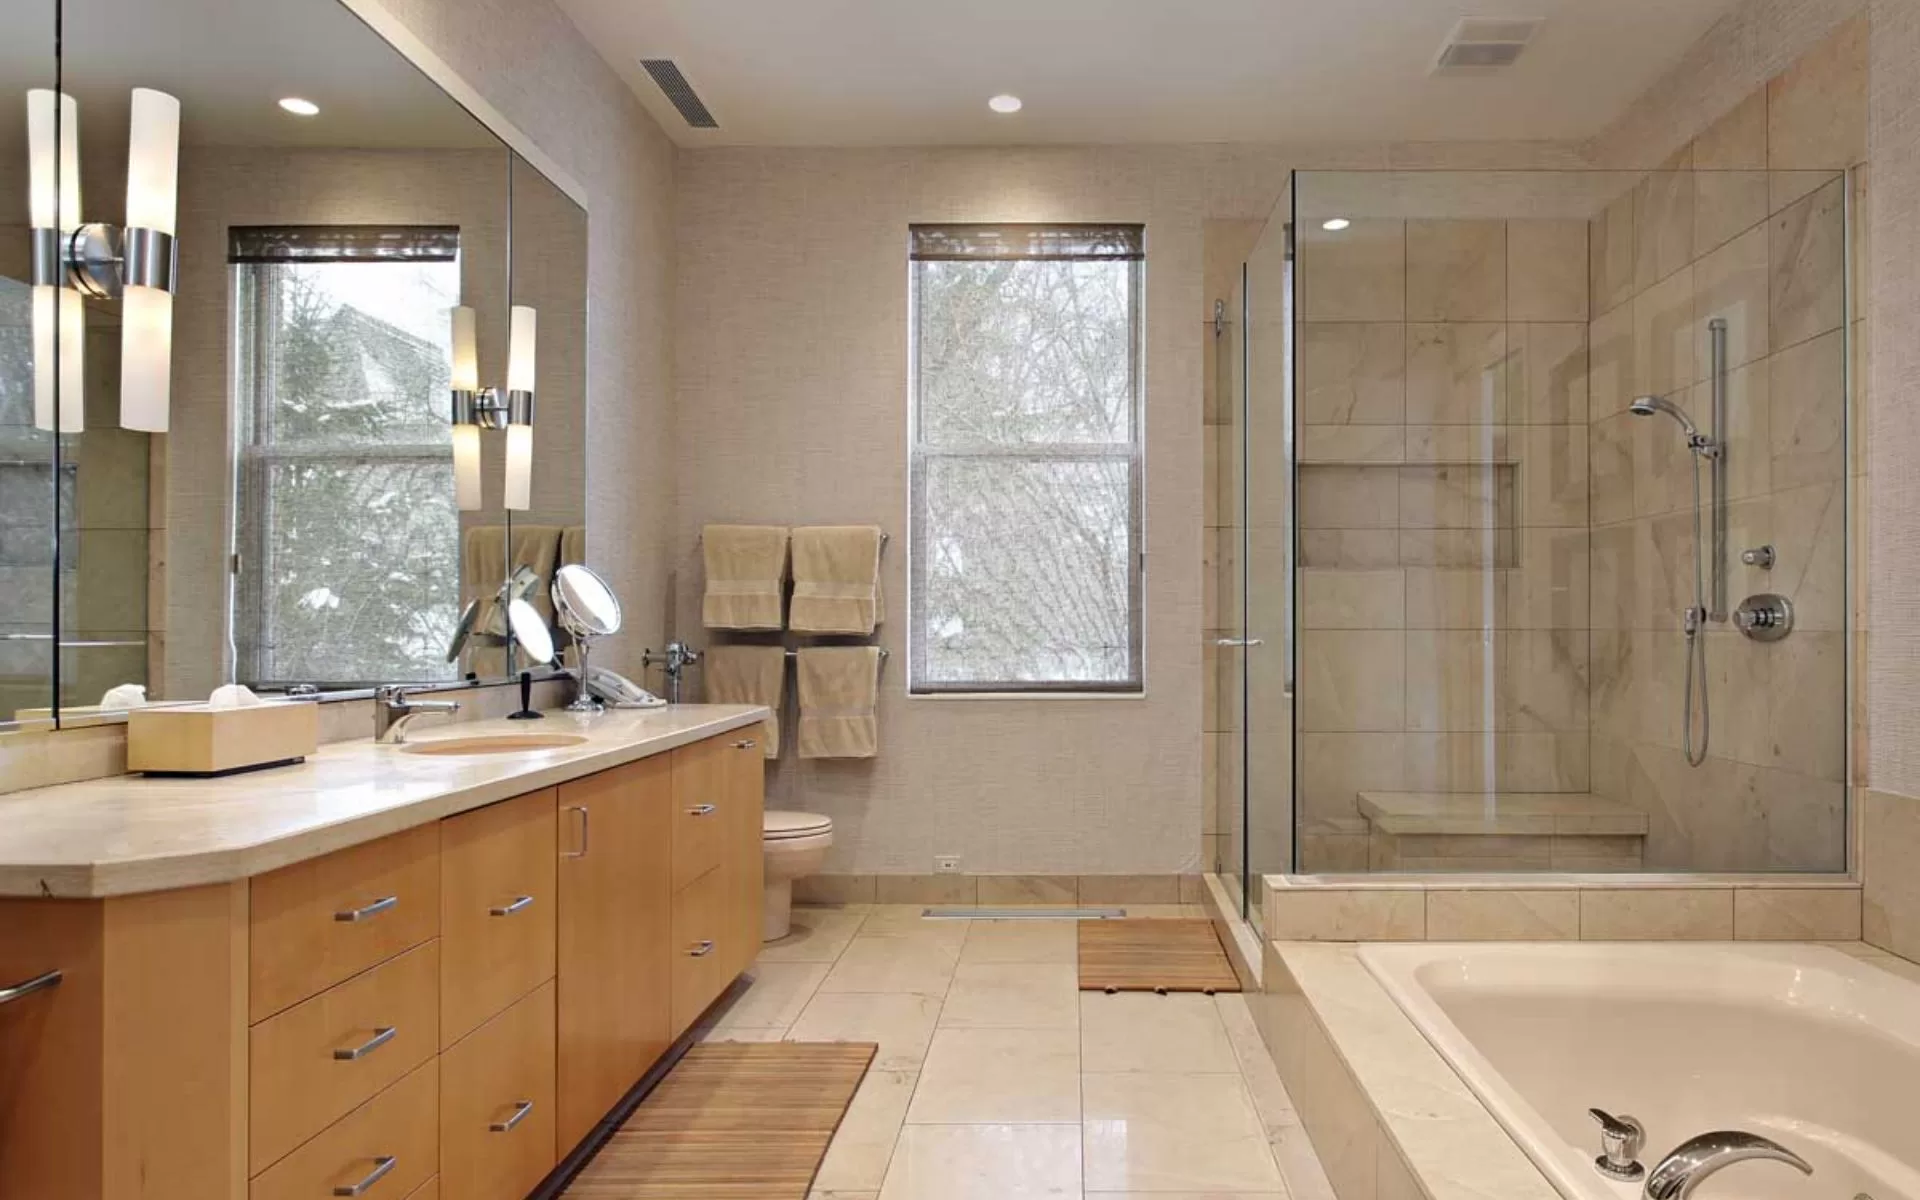 Condo bathroom remodeling - B&B Concept Design